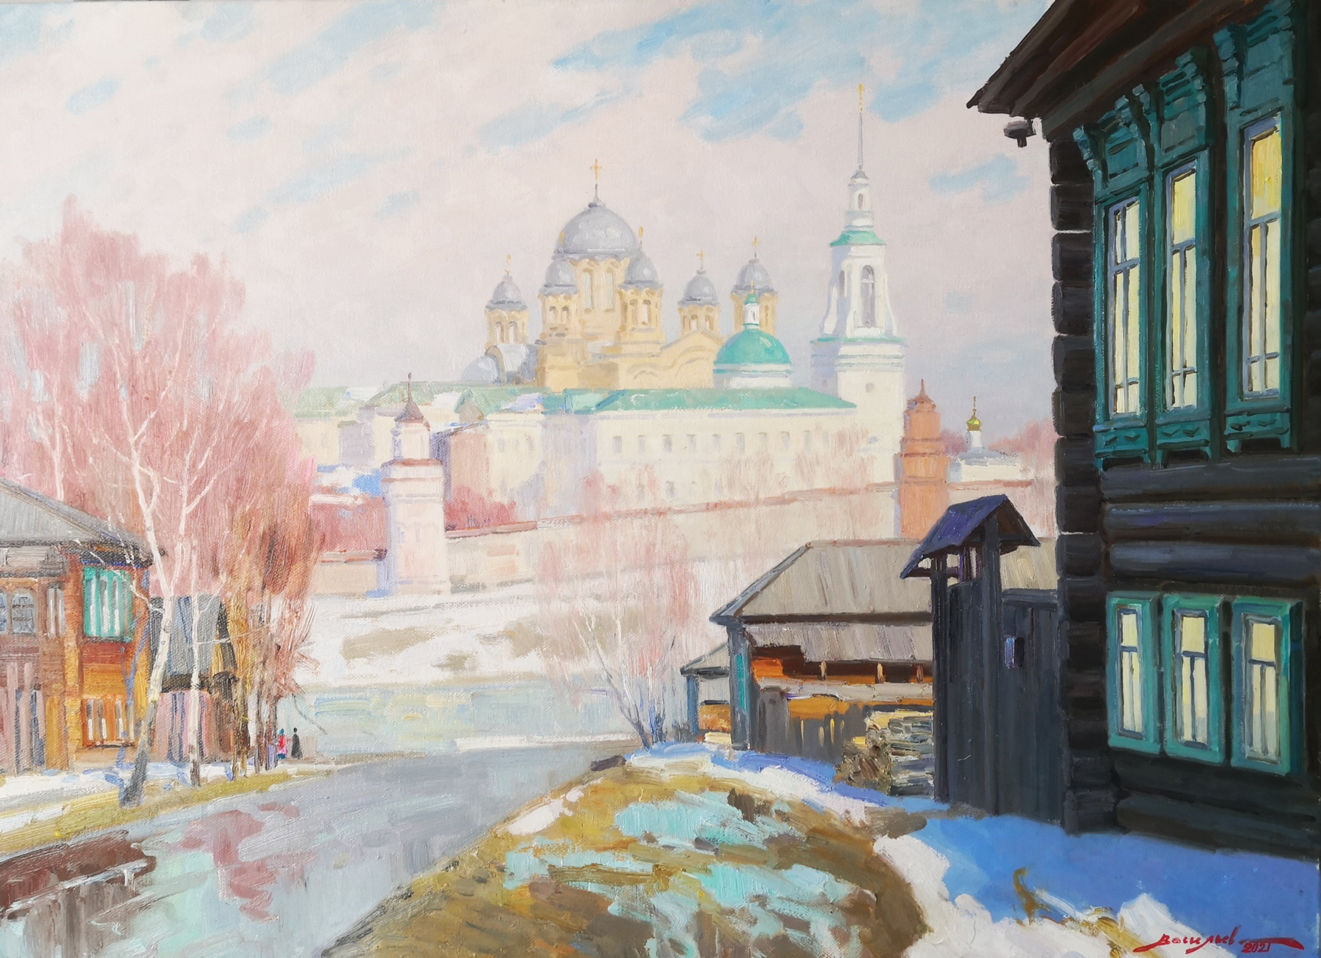 Spring in Verkhoturye - 1, Dmitry Vasiliev, Buy the painting Oil